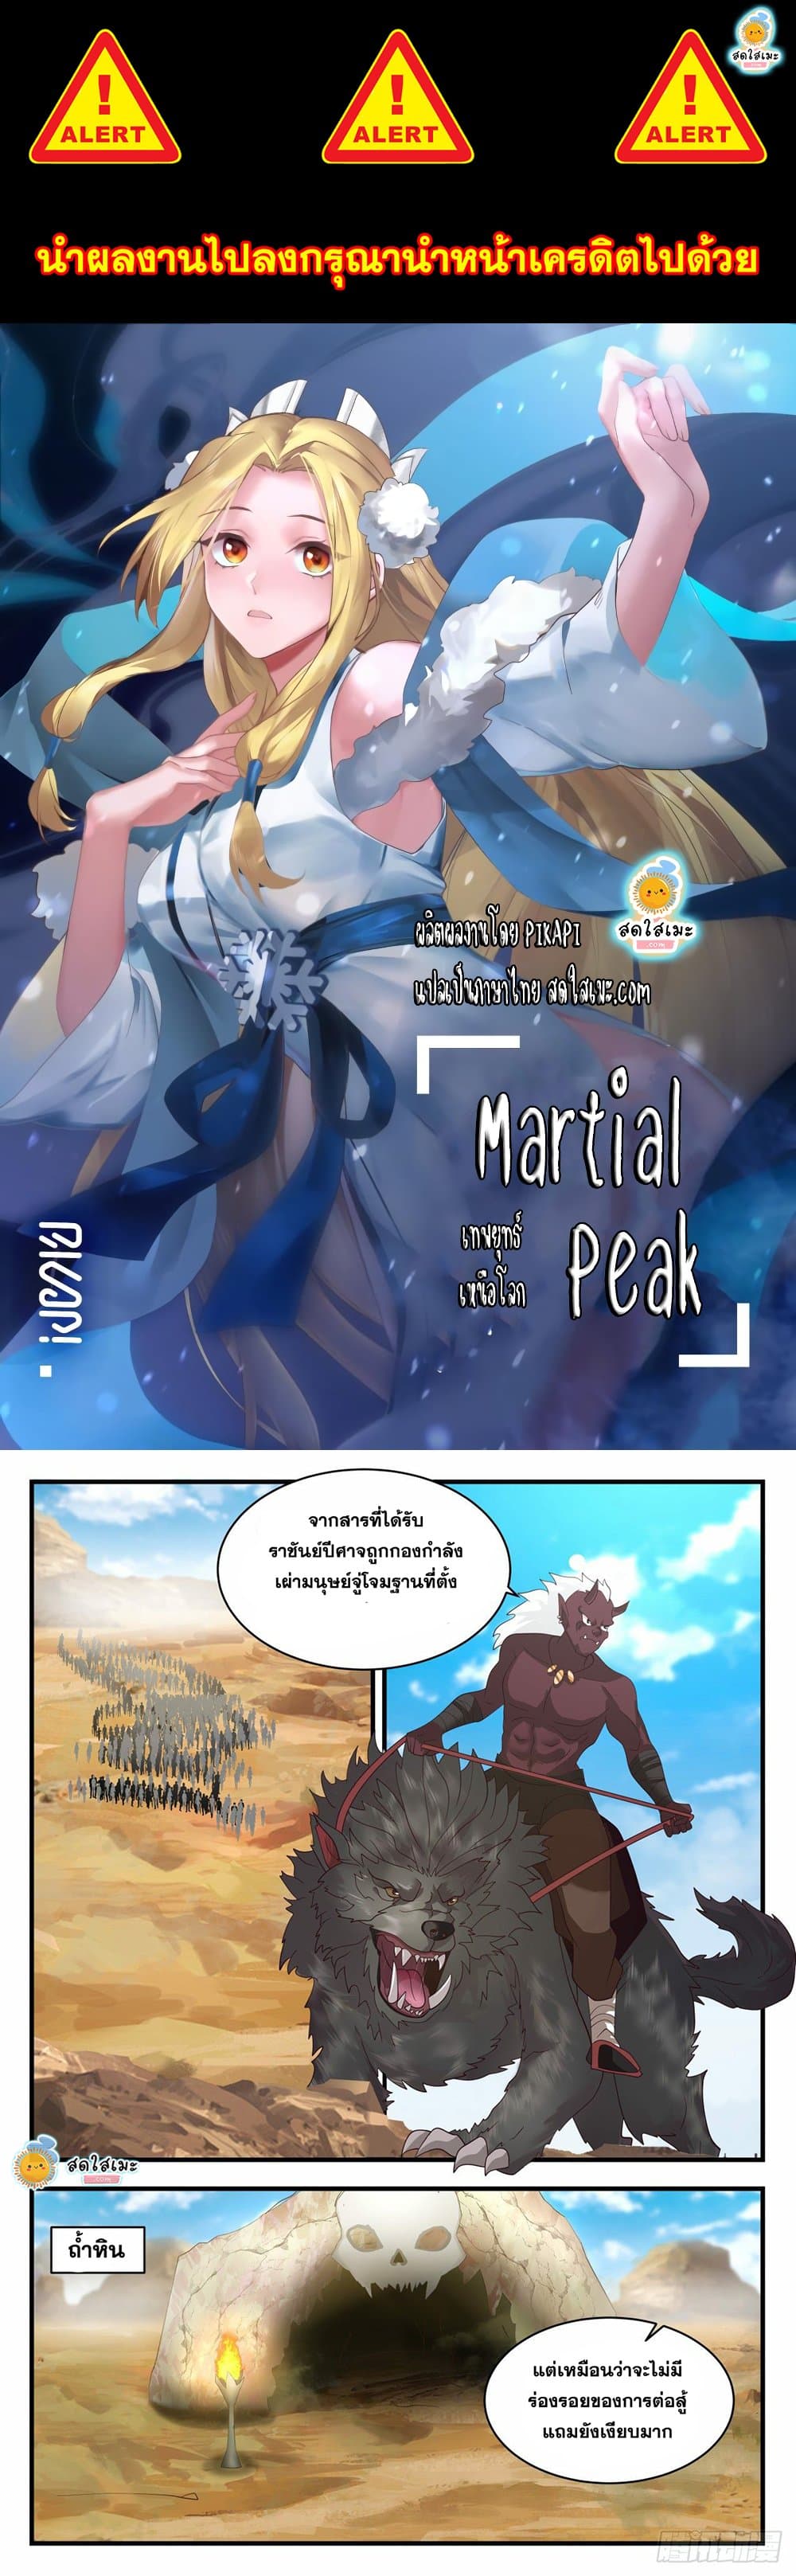 Martial Peak 2031 (1)